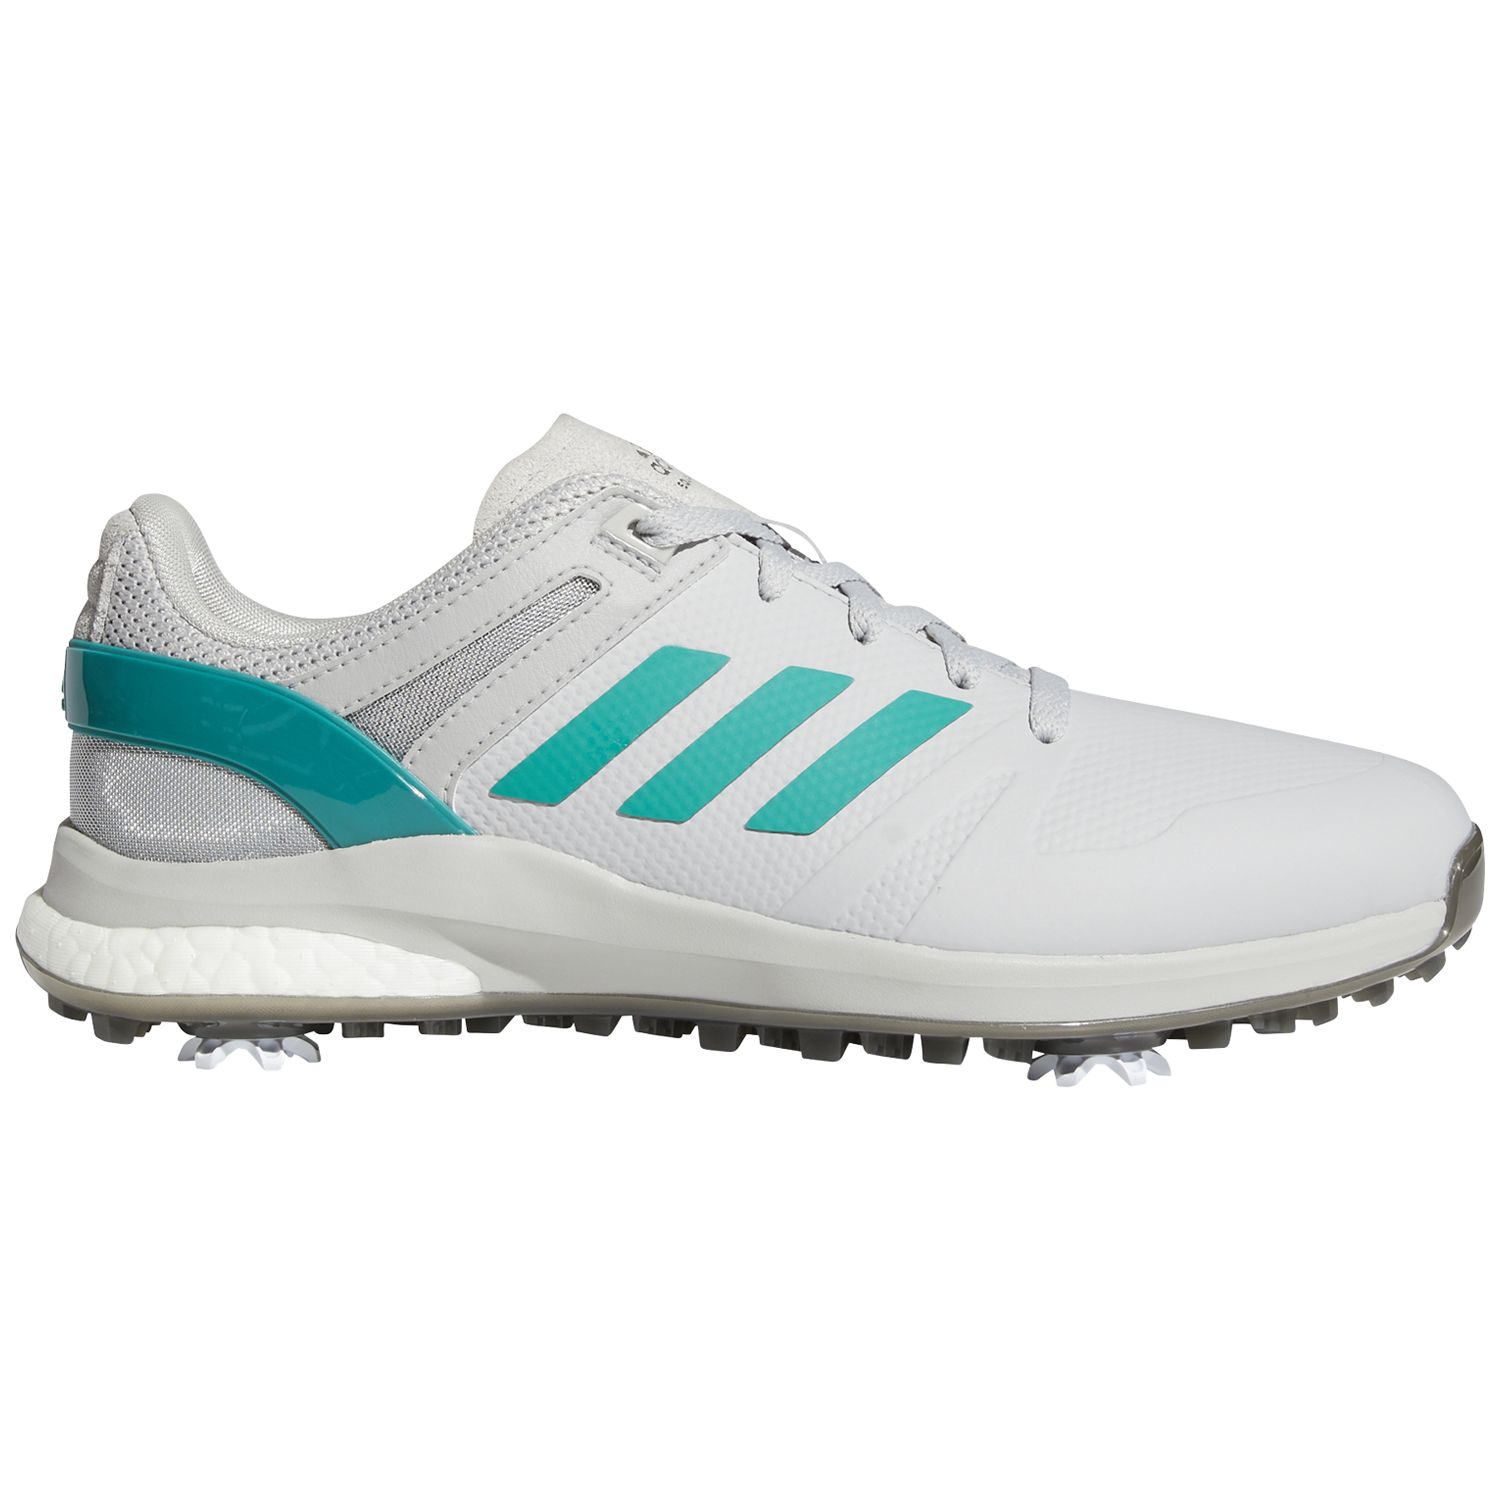 adidas EQT Golf Shoes Grey Two/Sub Green/Grey Six | Scottsdale Golf